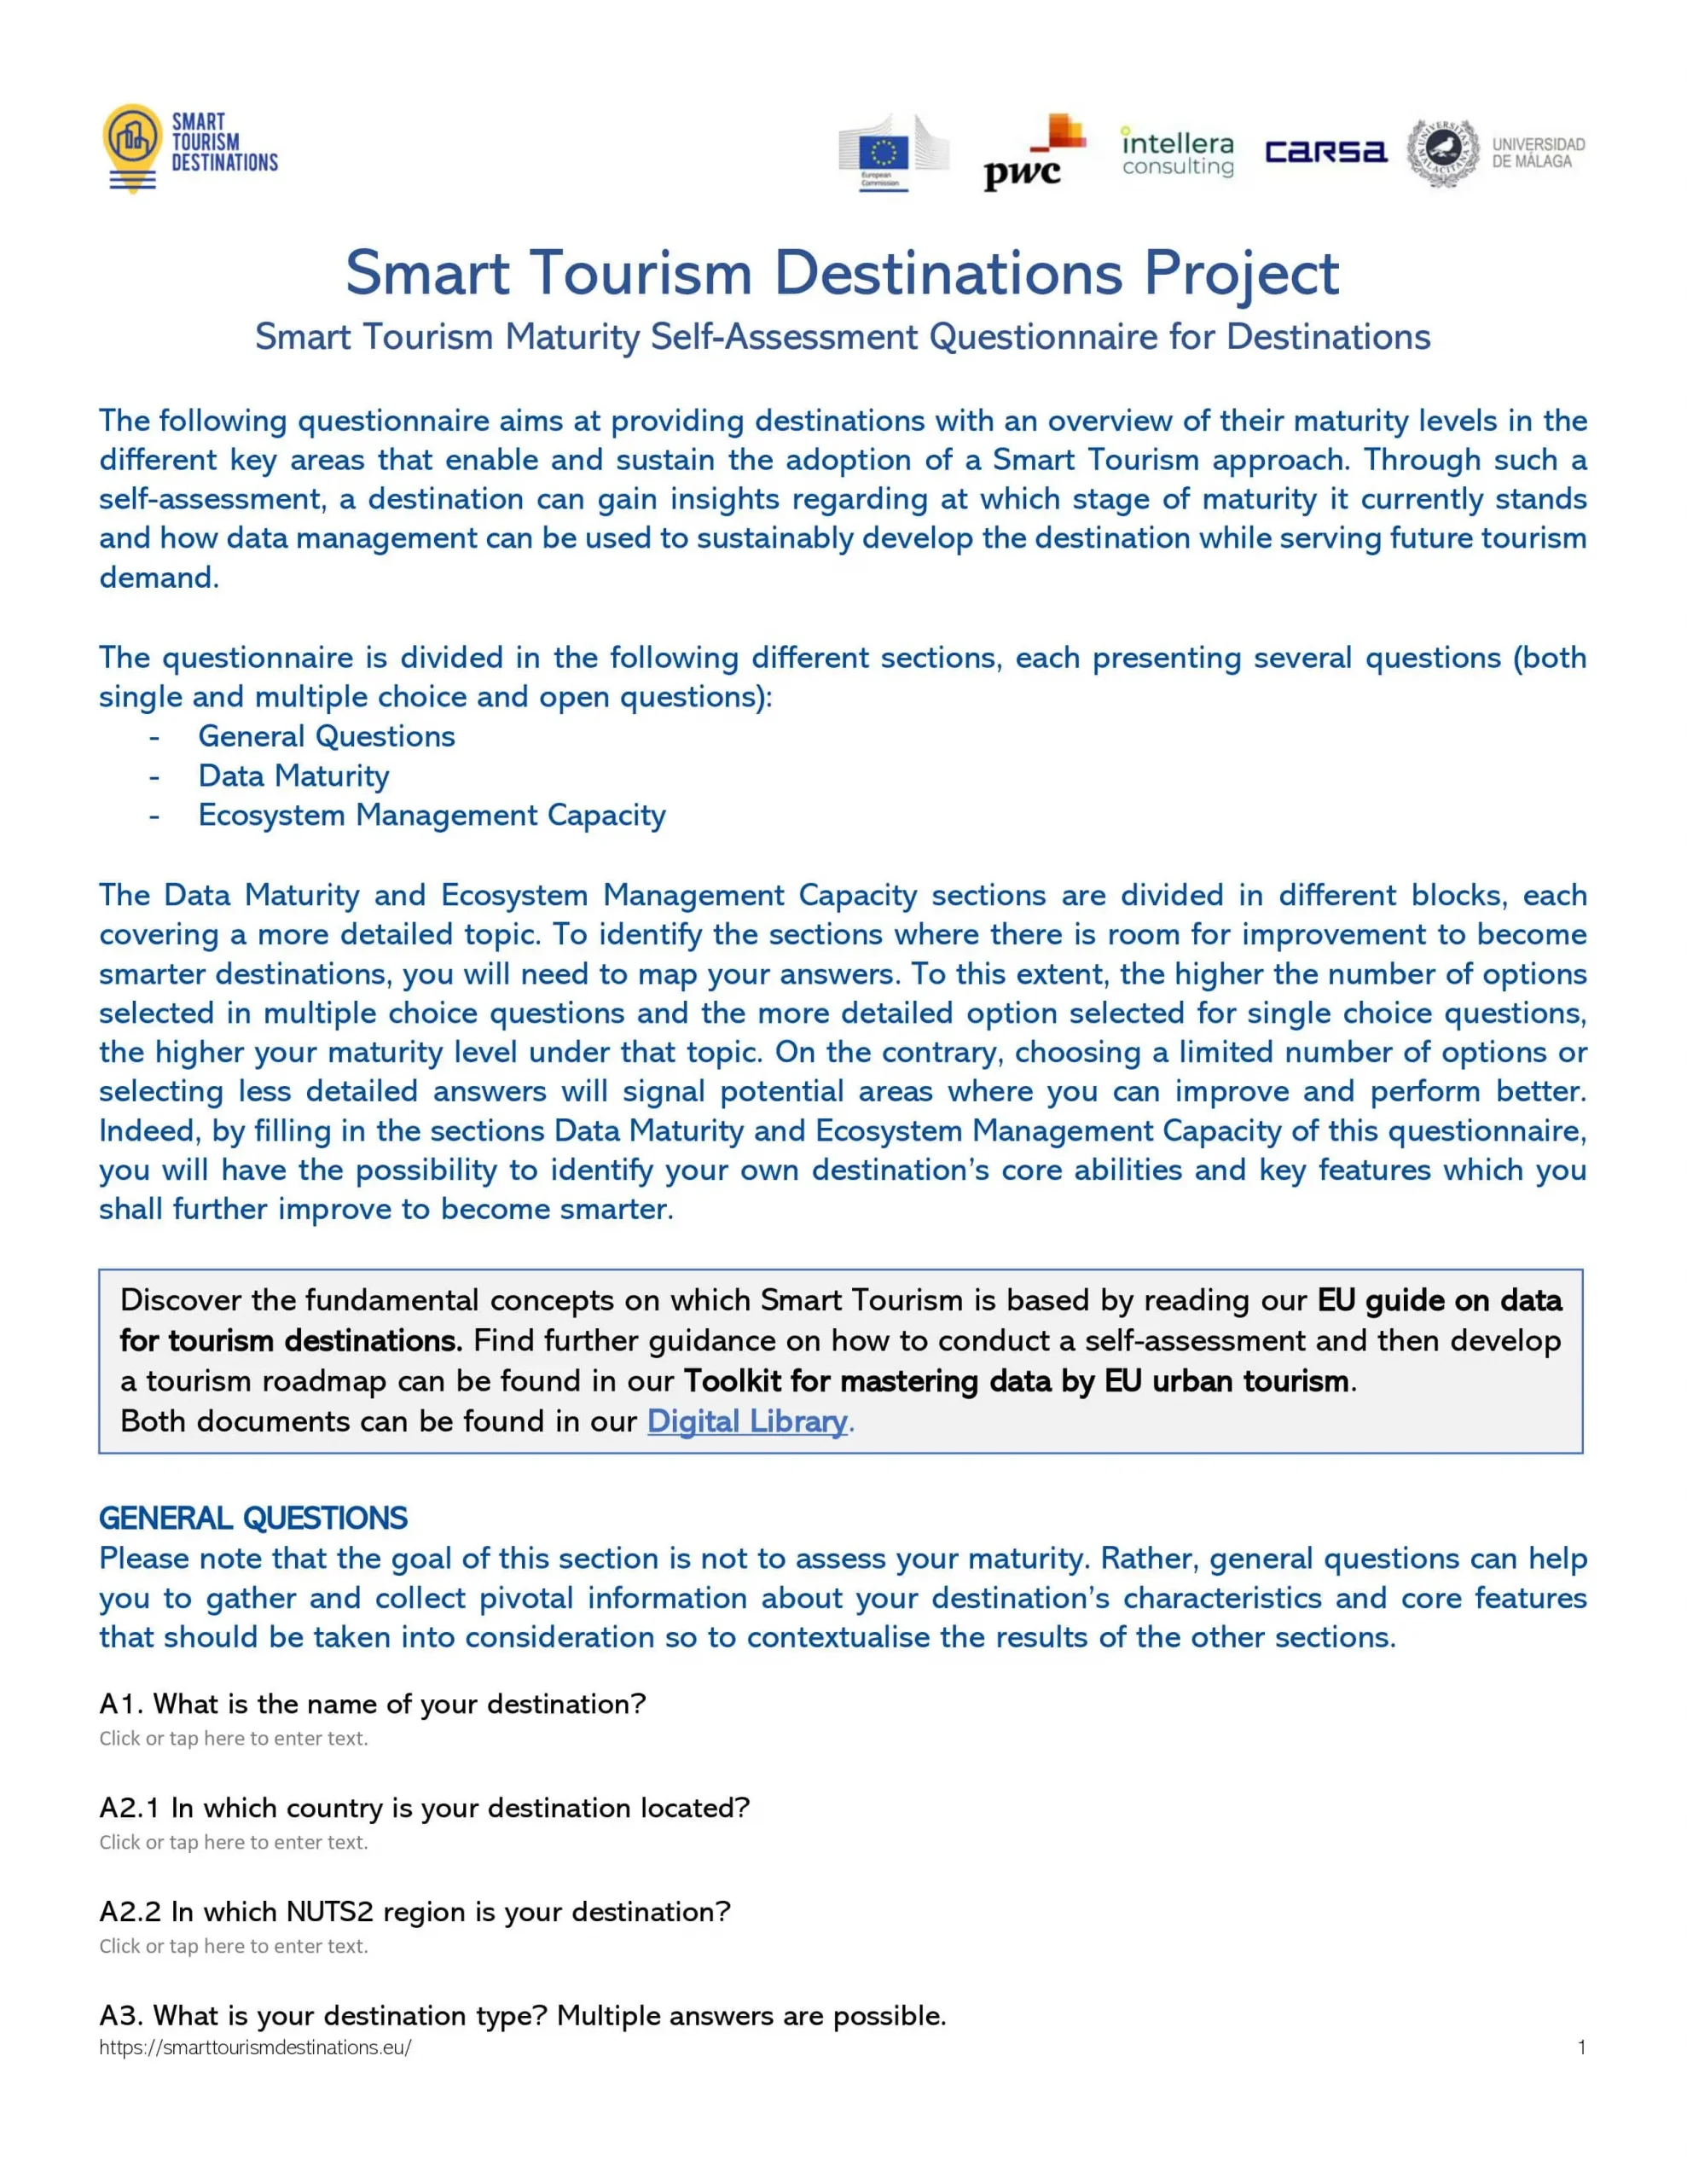 Smart Tourism Destinations_Self assessment questionnaire